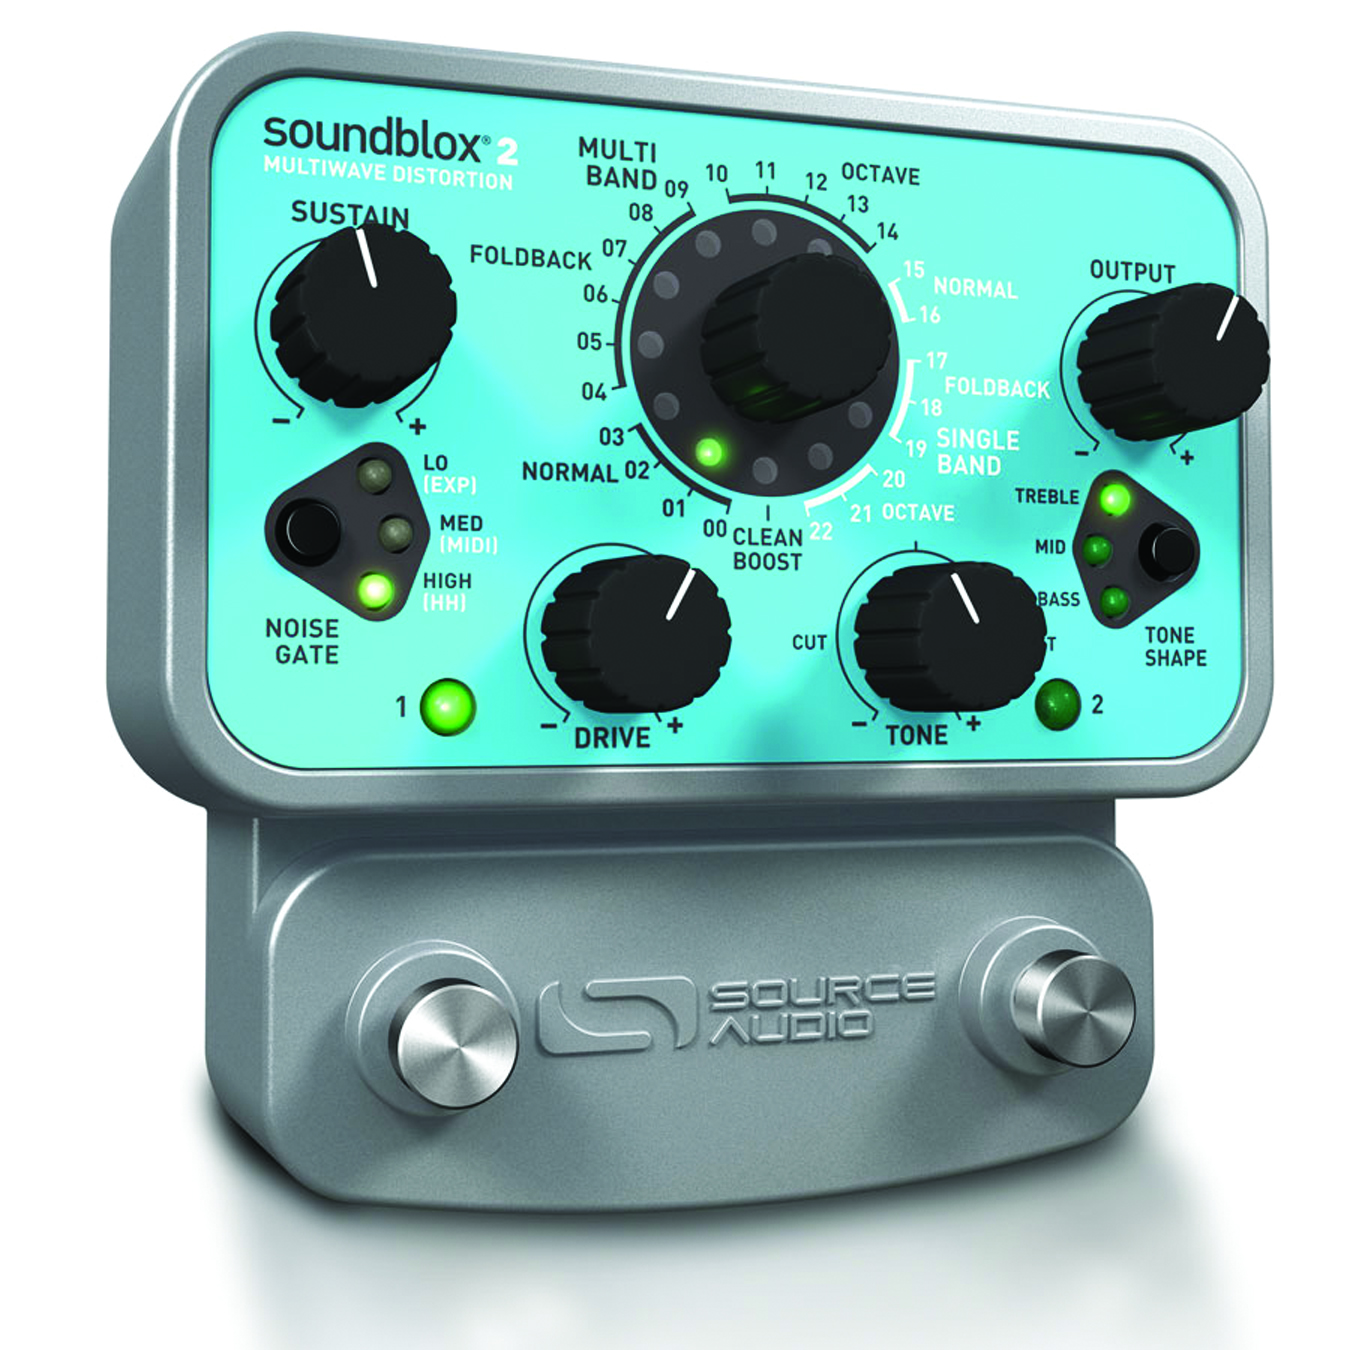 Source Audio SoundBlox 2 Multiwave Distortion Pedal Review 